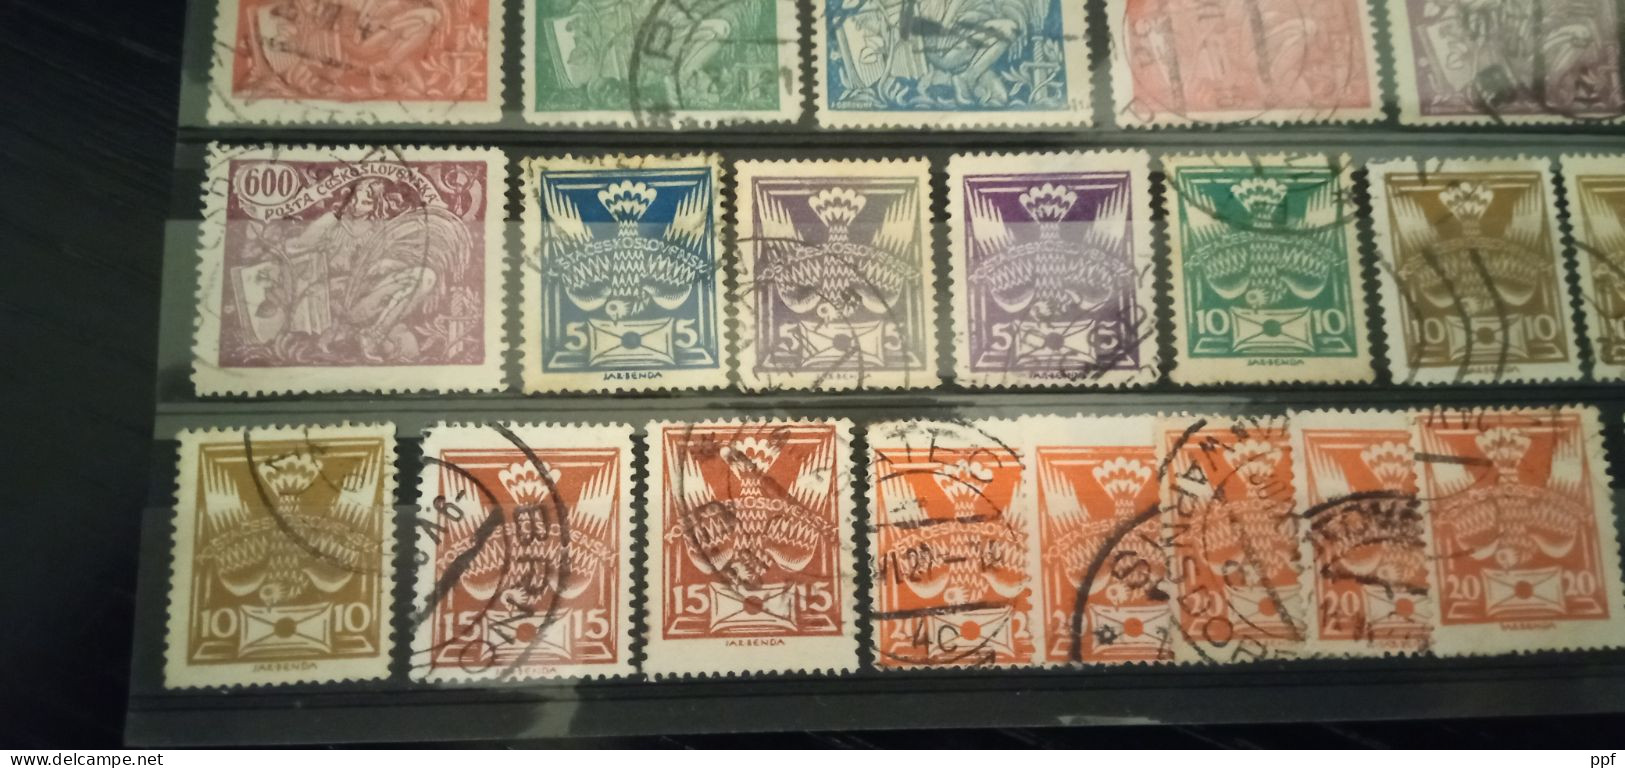 Ceskoslovensko usati lotto dentellati. I francobolli sono in ottime condizioni, entra e guarda le immagini.